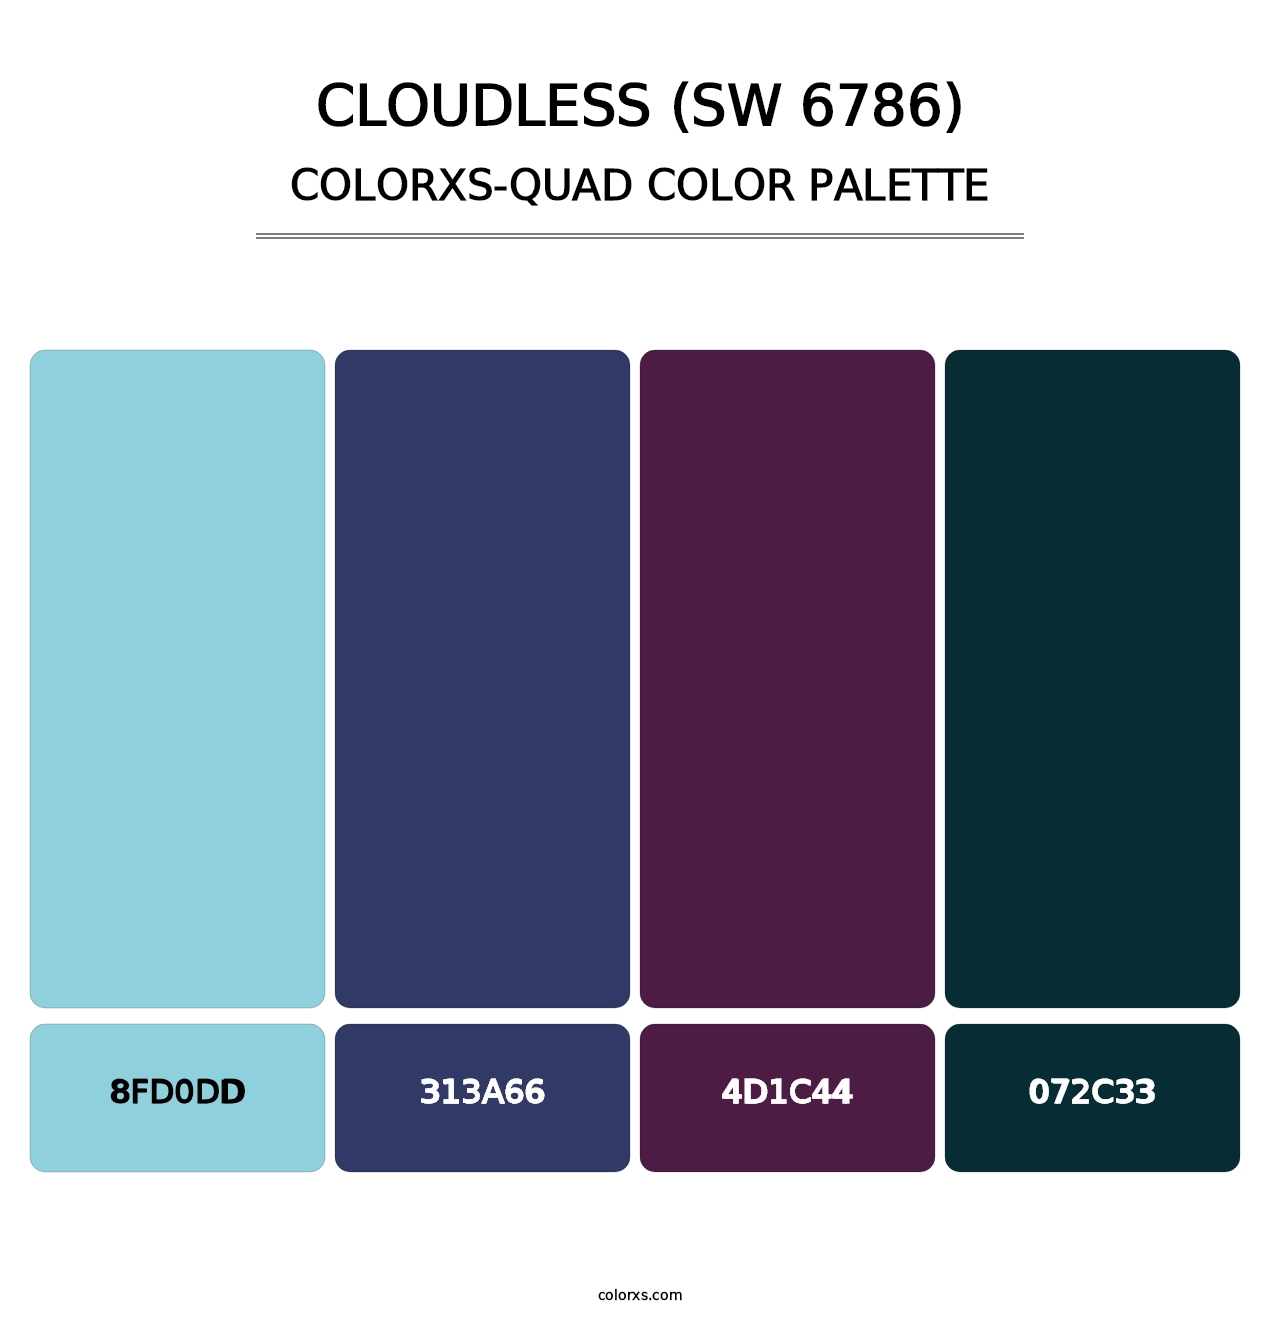 Cloudless (SW 6786) - Colorxs Quad Palette